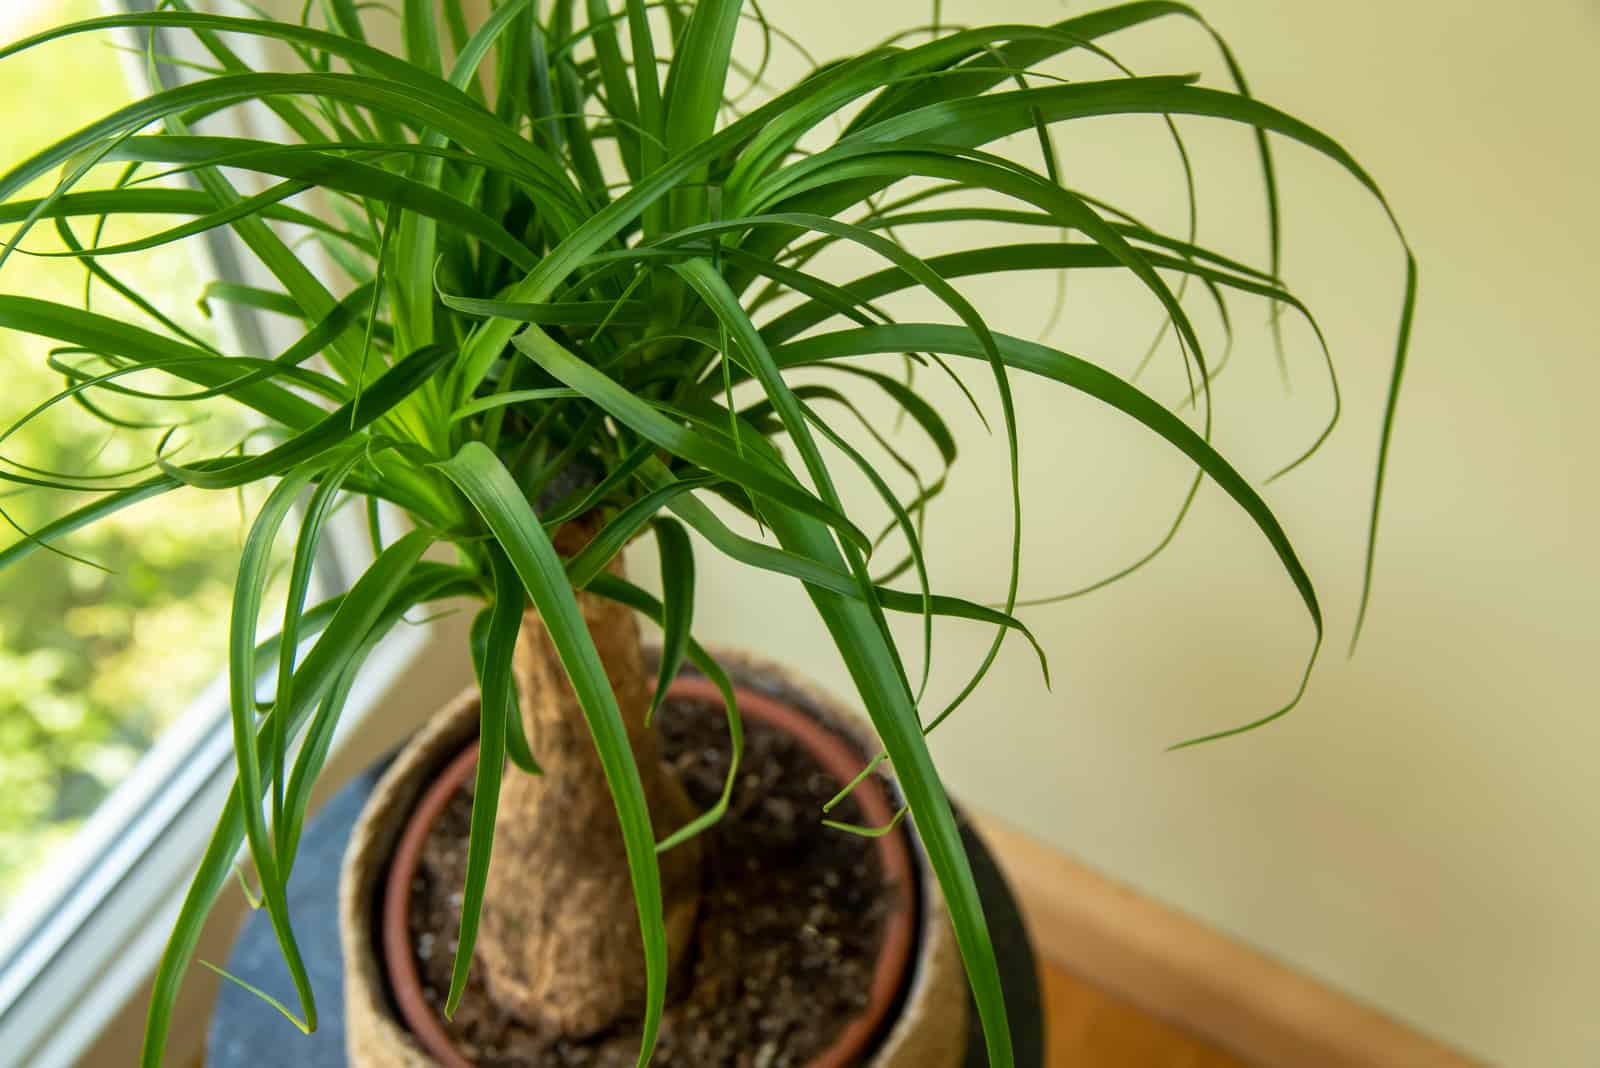 Beaucarnea recurvata plant in pot by window